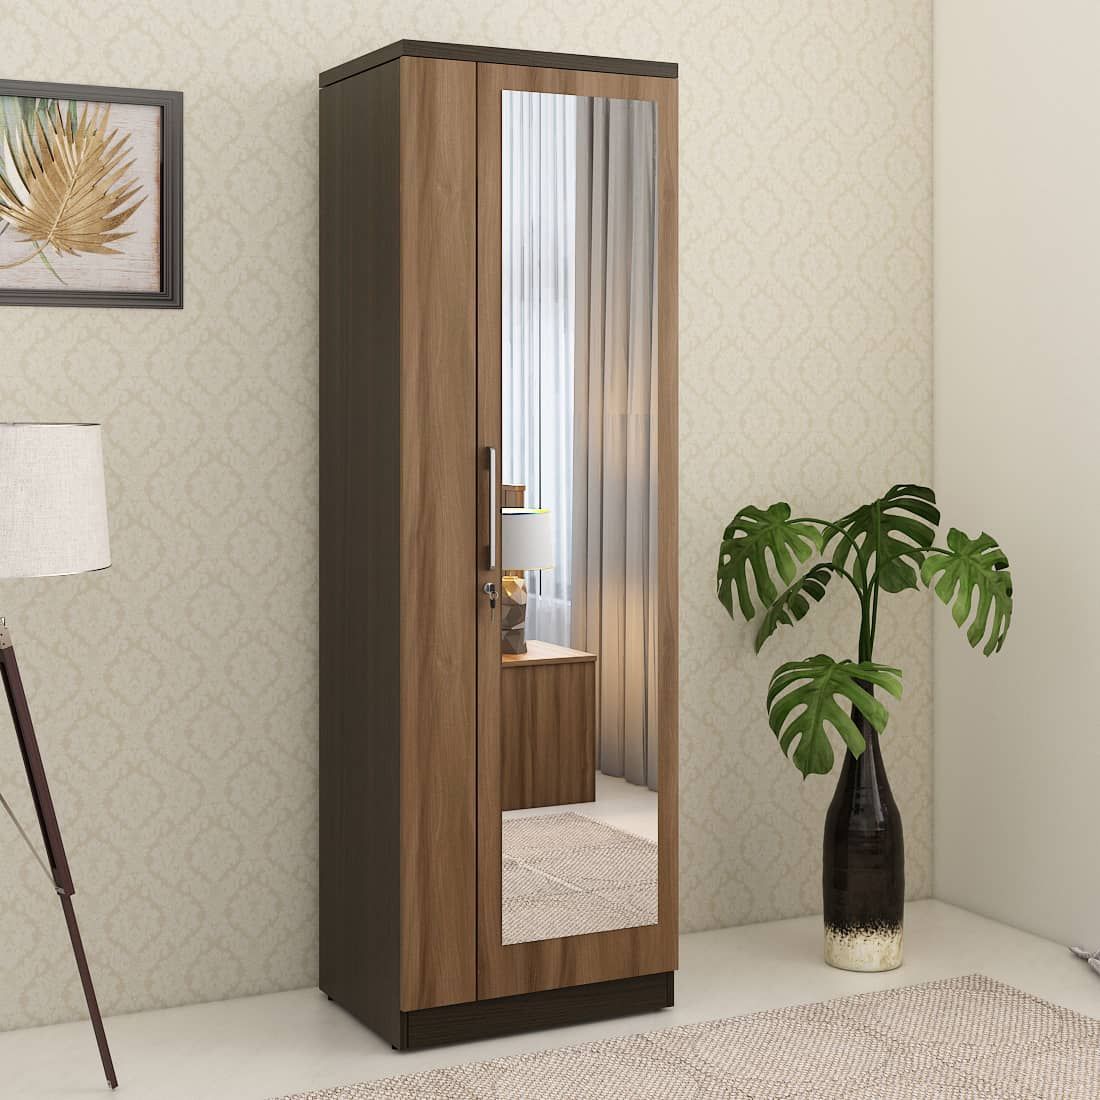 Kosmo Ken 1 Door Wardrobe With Mirror Walnut Bronze Woodpore | Spacewood  Ecommerce With Regard To Single Door Mirrored Wardrobes (View 2 of 15)